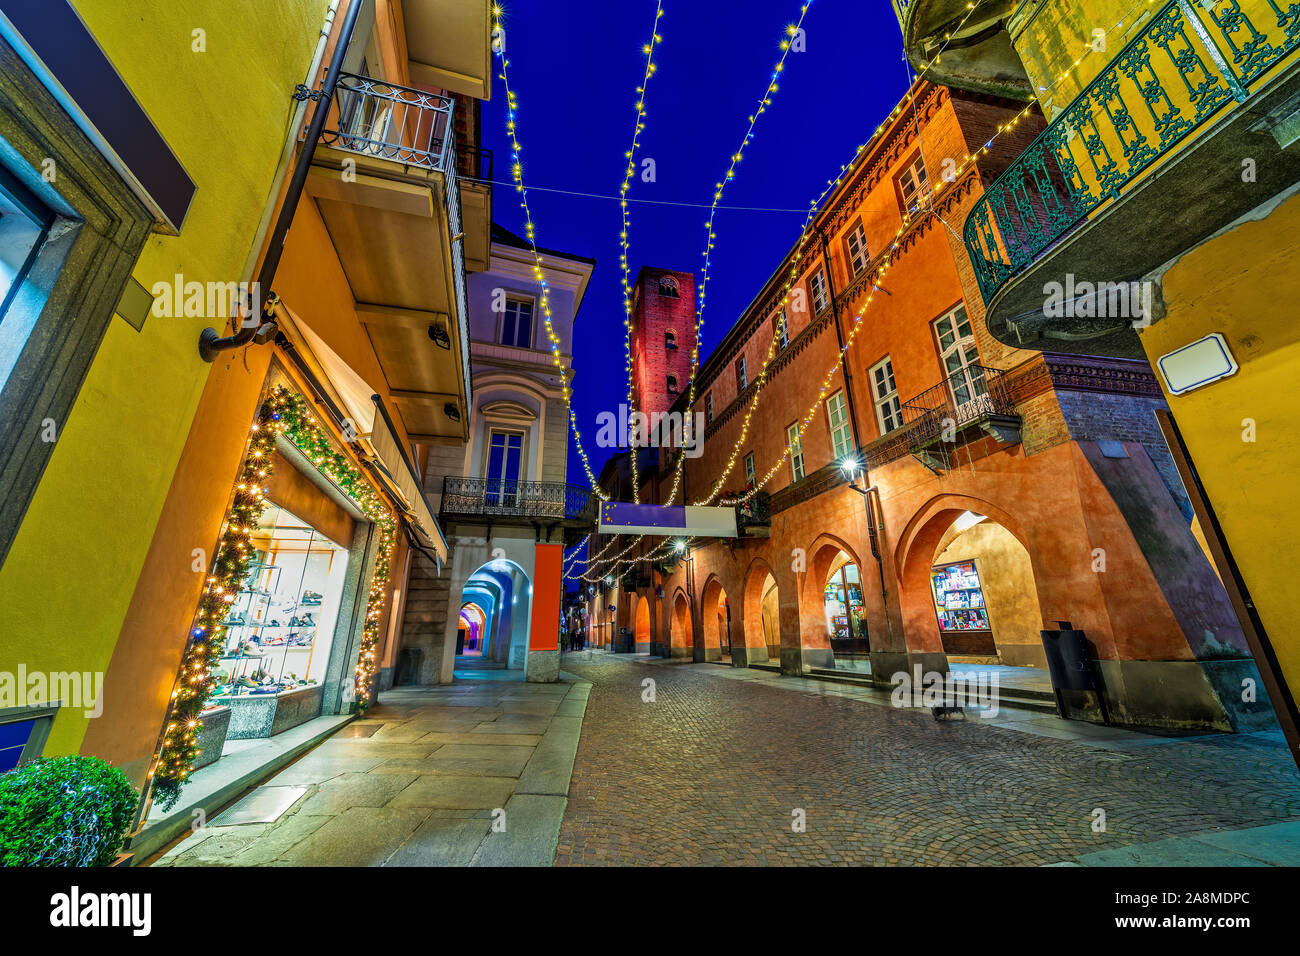 In ciottoli di strada pedonale con illuminazione di Natale nel centro storico di Alba in Piemonte, Italia settentrionale. Foto Stock